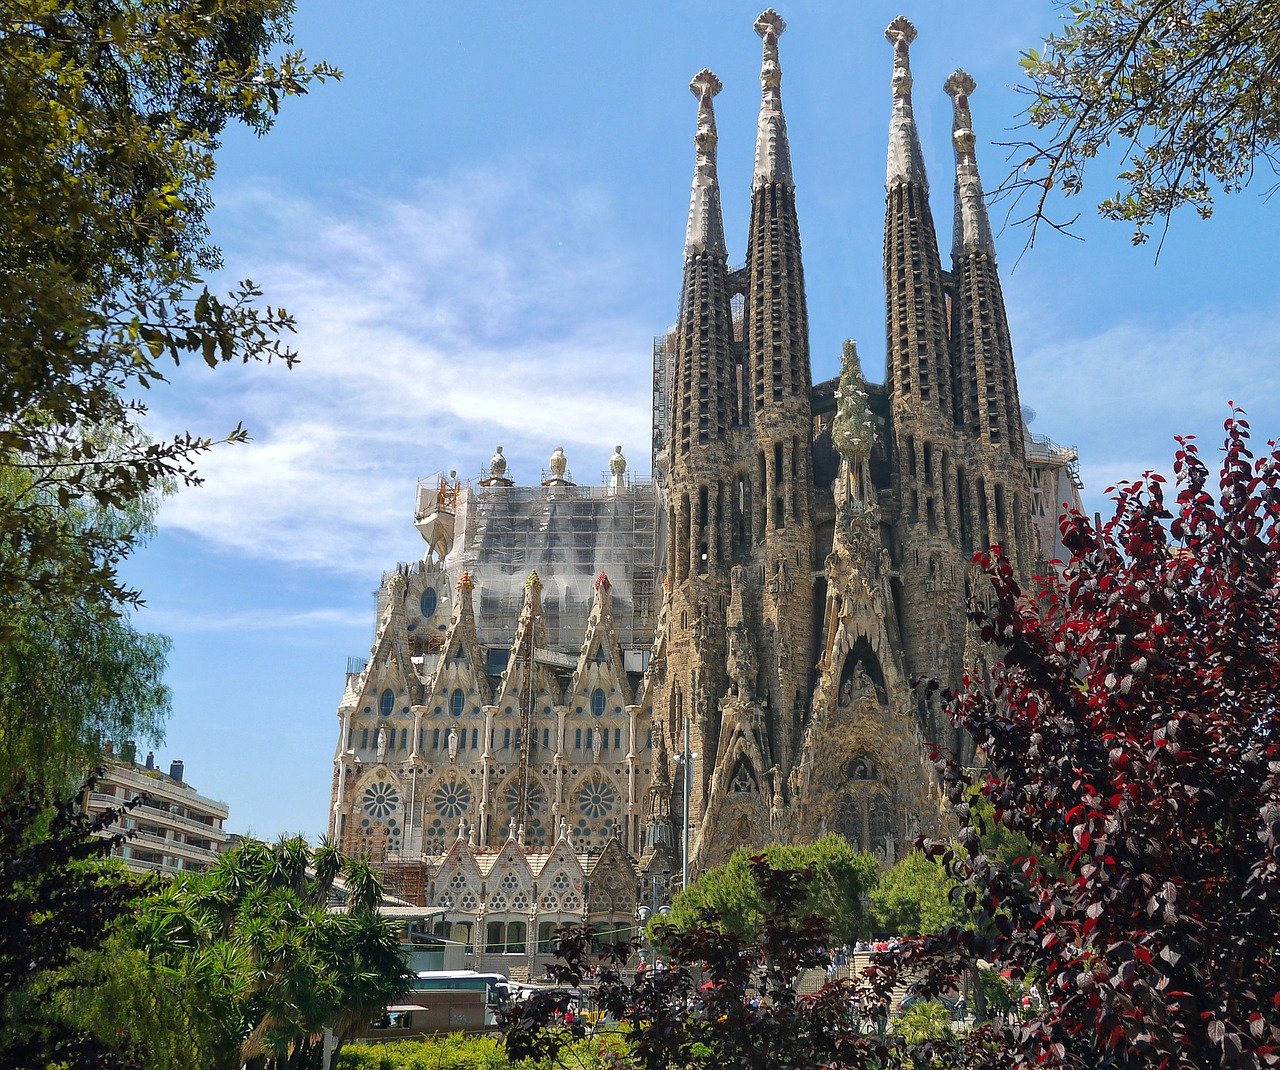 Què pots visitar a Barcelona?